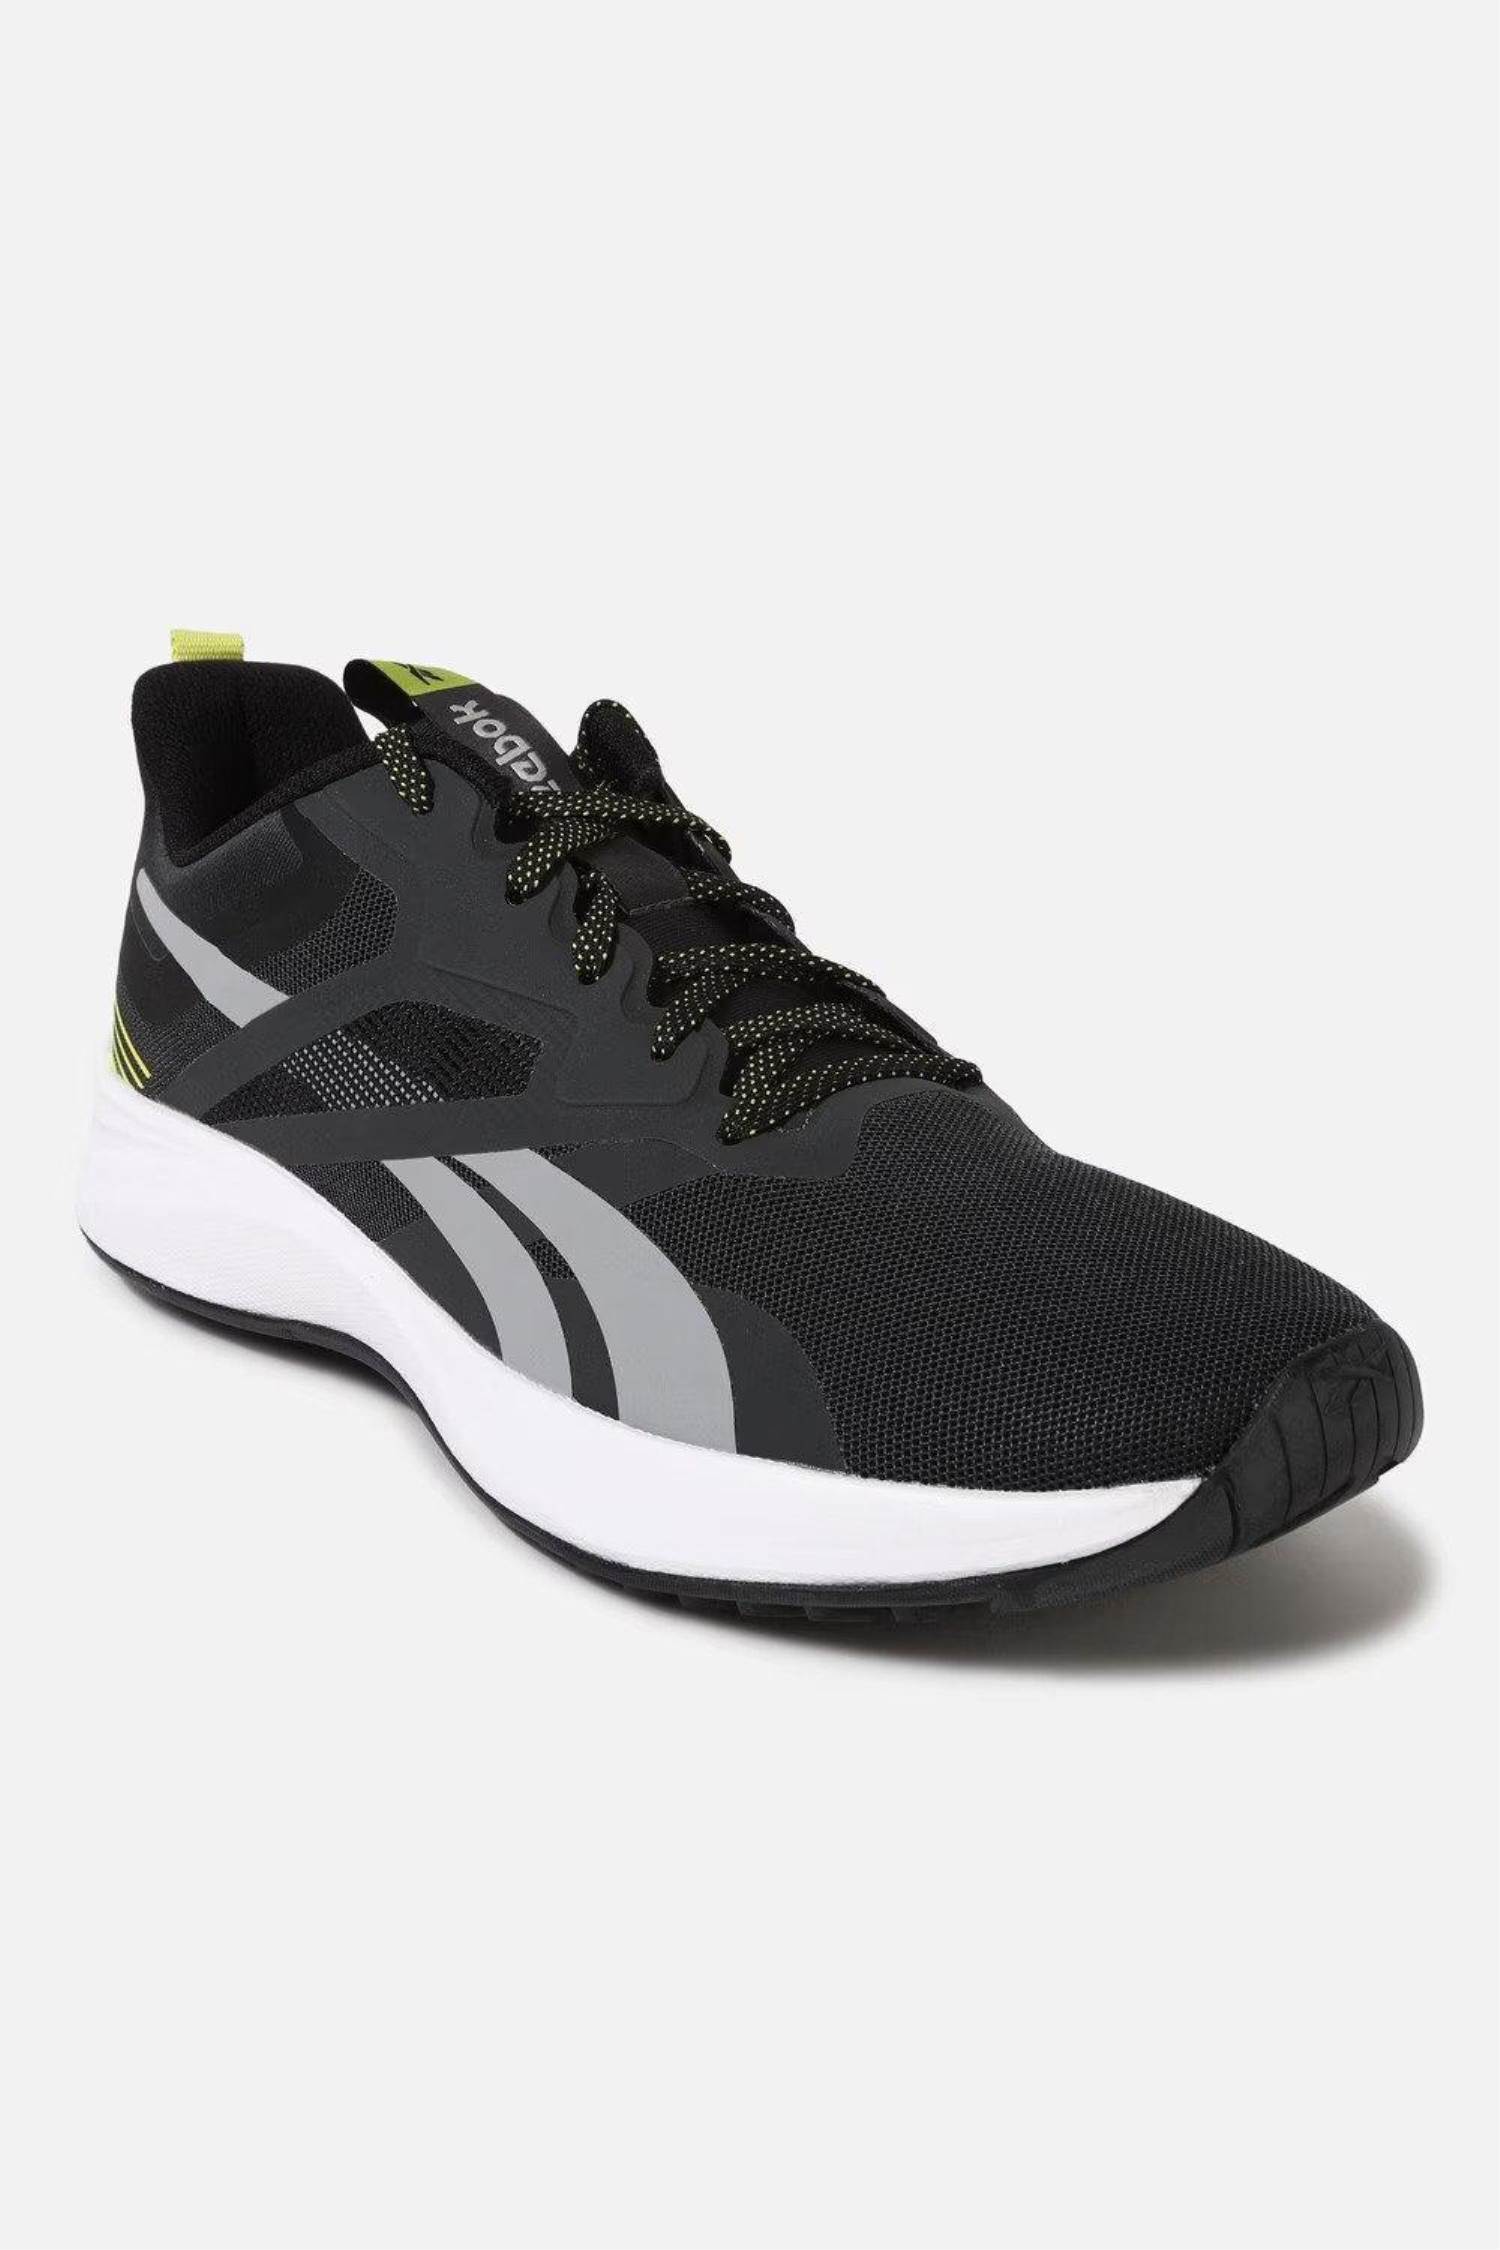 Reebok Brand Mens Original Trek Run M Running Laced Sports Shoes GC0087  (D.Grey/Orange) :: RAJASHOES